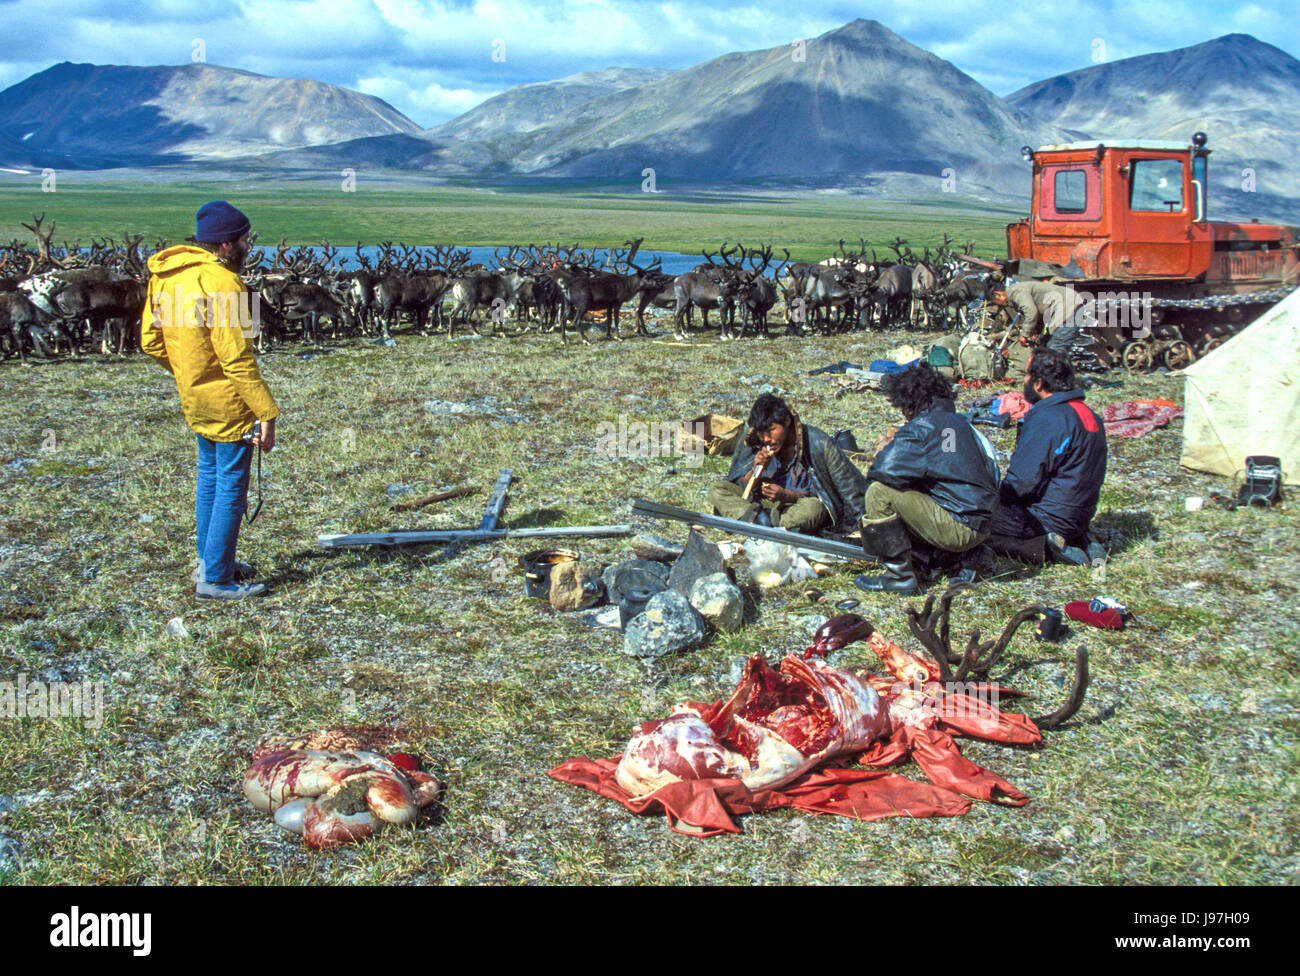 Preparazione per un arrosto di renne per gli ospiti ad un nomade renne Chukchi herders' yurt encampment sul Chukchi o penisola Chukotka, in russo il F Foto Stock